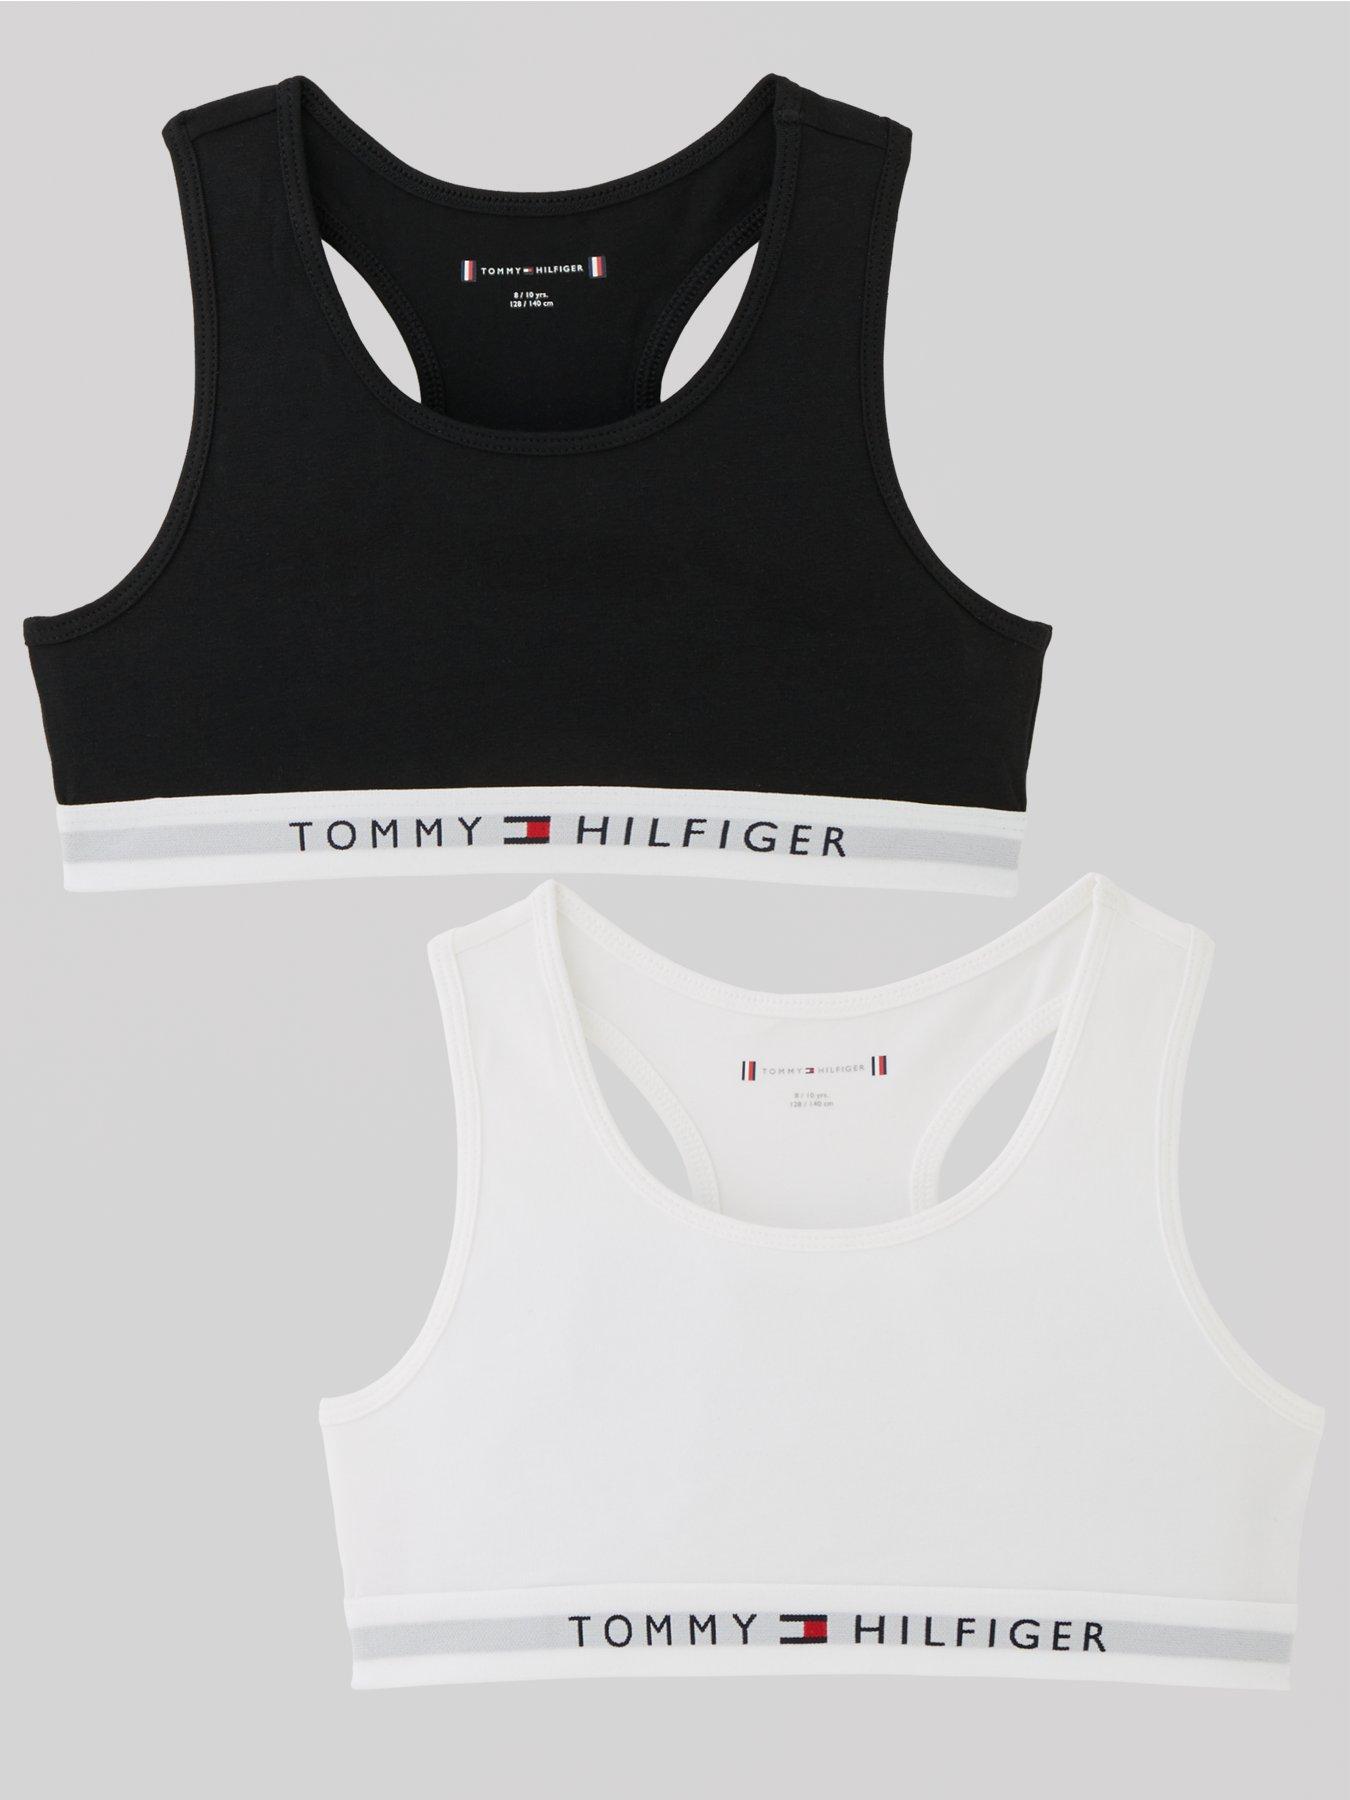 Tommy Hilfiger, Tommy Hilfiger 2 Pack Logo Bra, Lightly Lined Bralettes